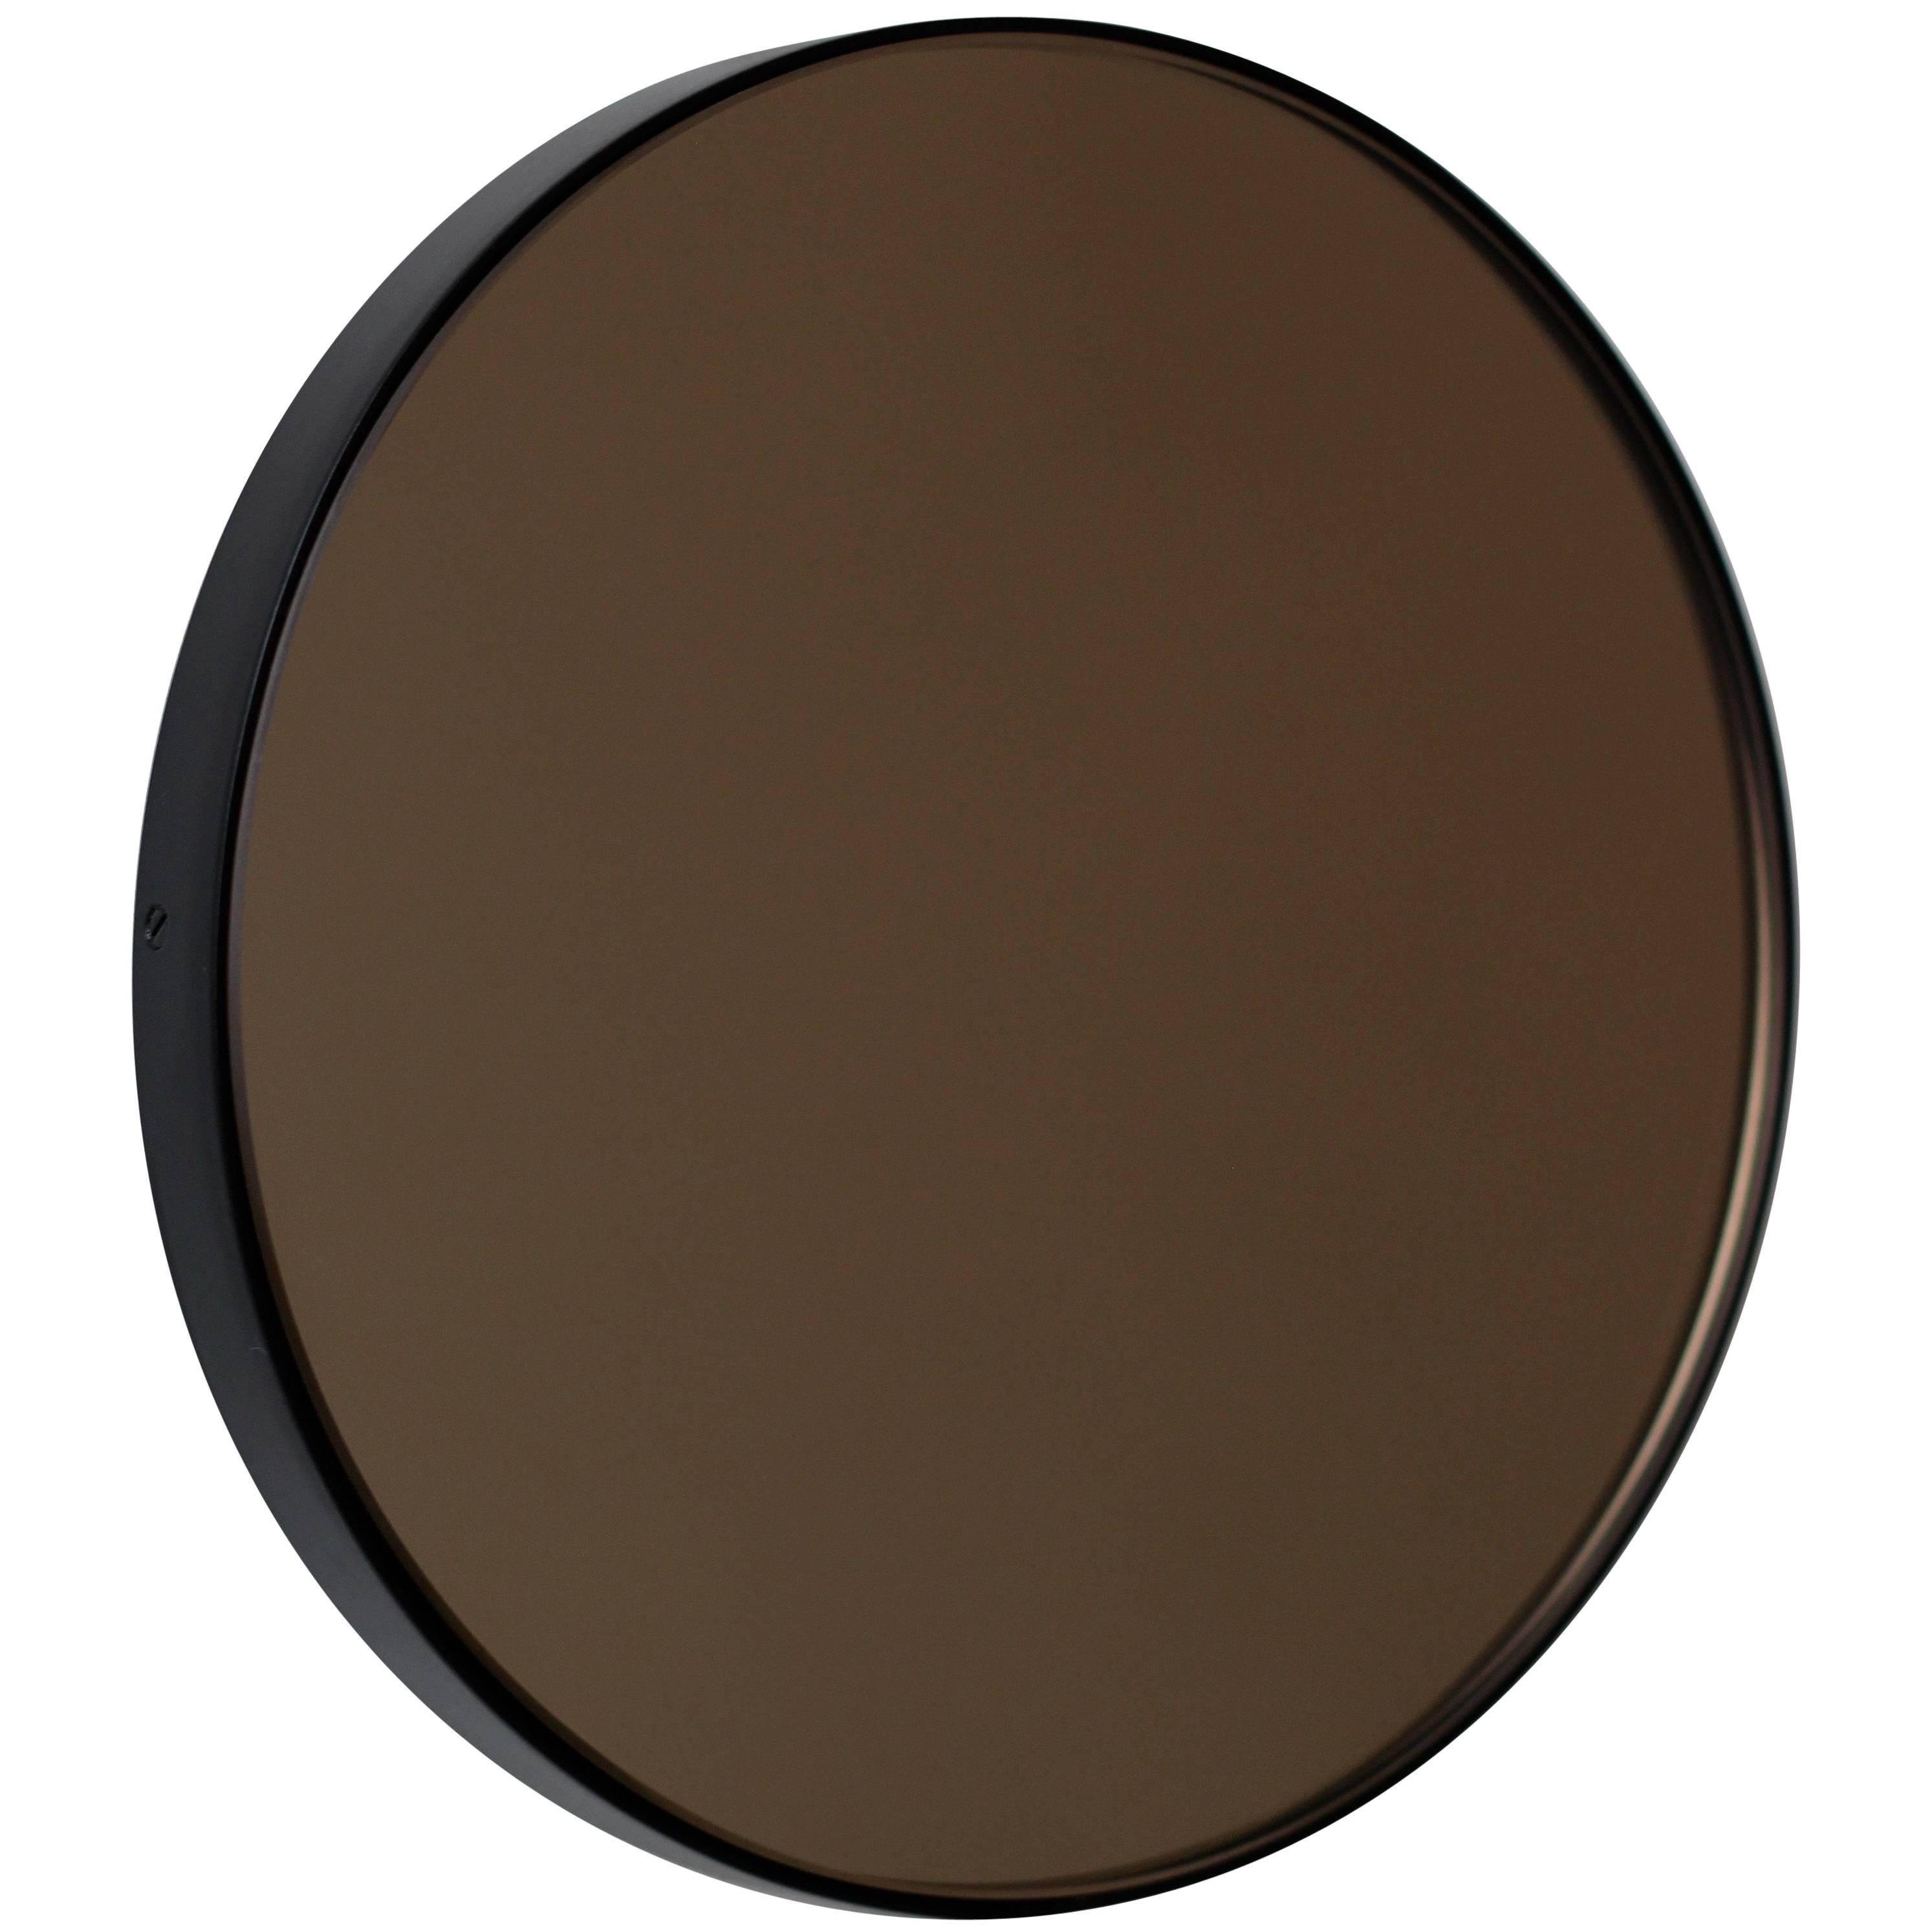 Orbis Bronze Tinted Modernist Round Mirror w Black Frame Customisable, Medium